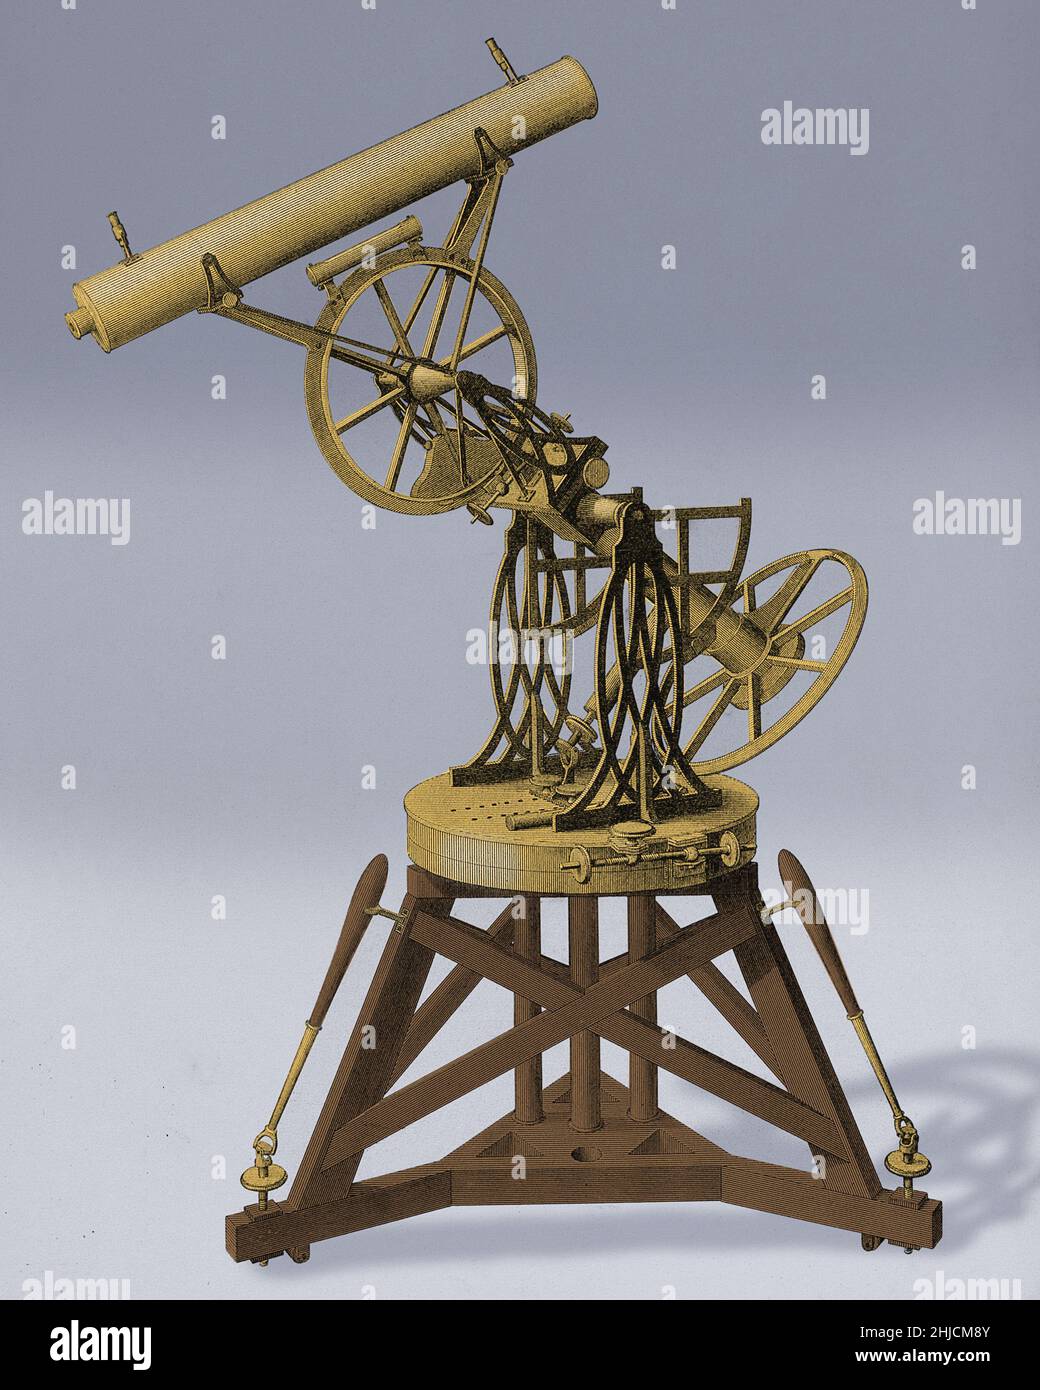 Troughton équatoriale. Ce télescope et ce support ont été fabriqués par le fabricant britannique d'instruments Edward Troughton (1753-1835). Cette œuvre est tirée de « une introduction à l'astronomie pratique », publiée par